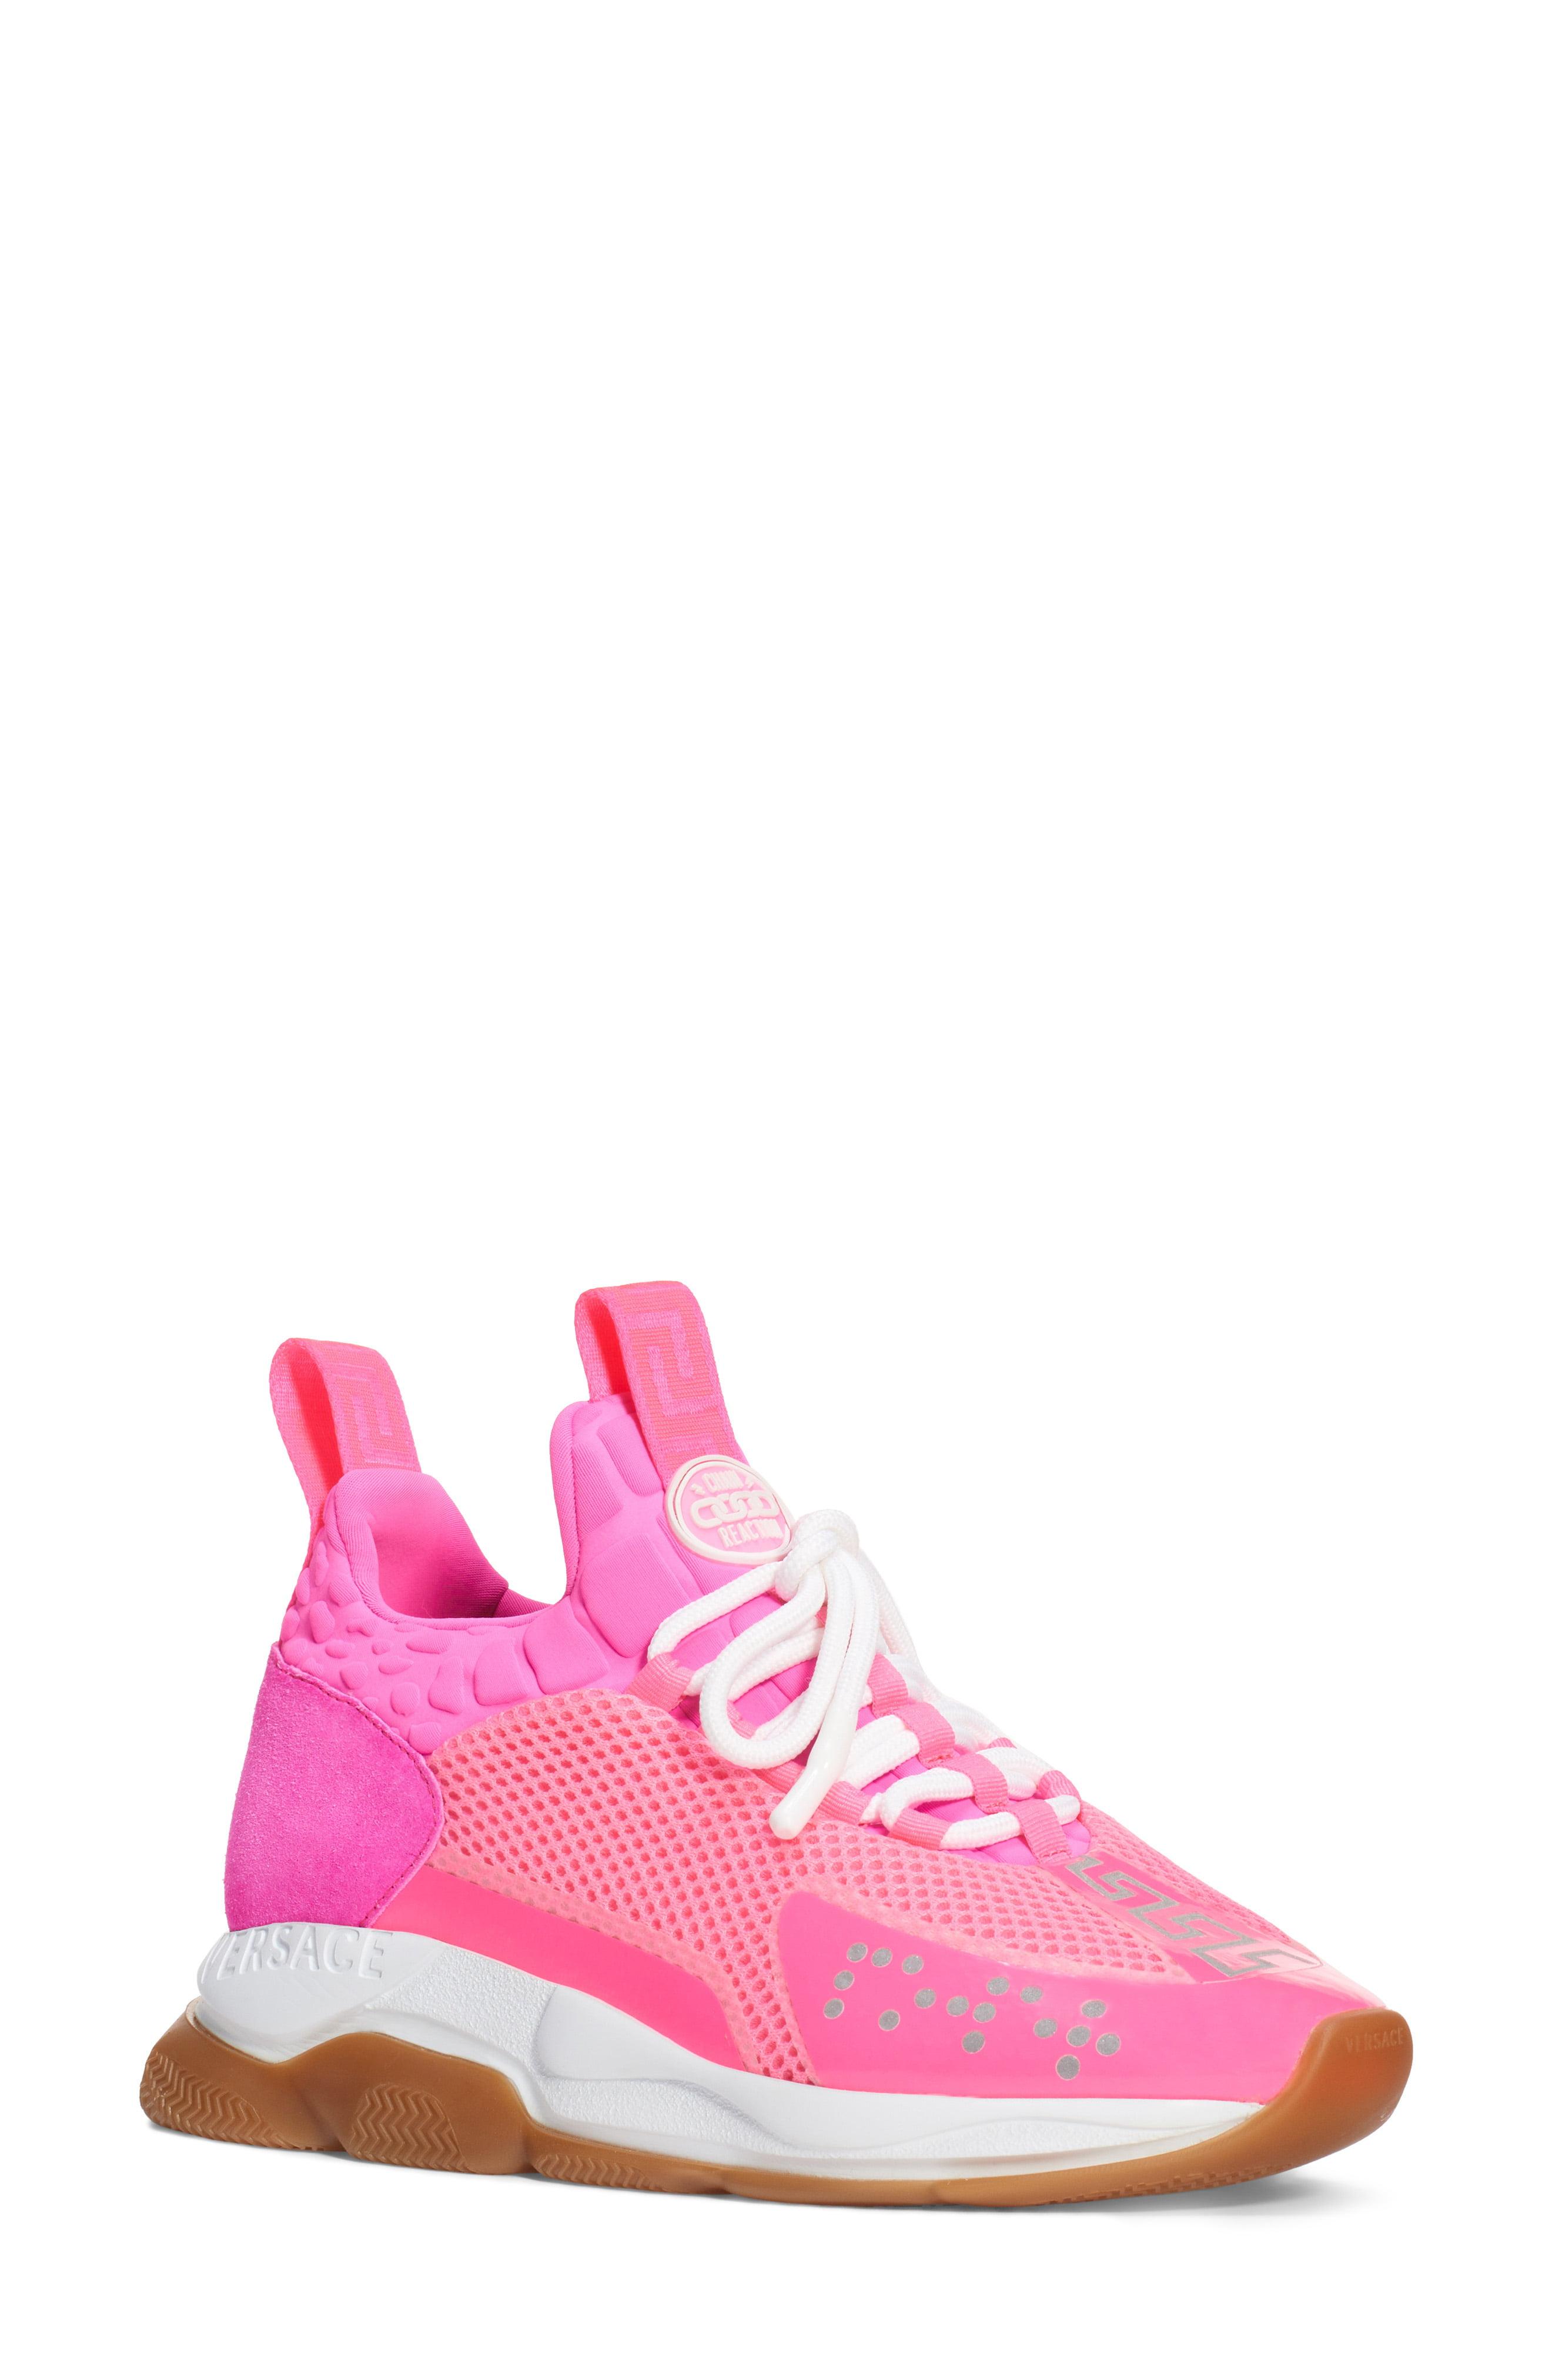 Versace Cross Chainer Sneaker in Pink - Lyst